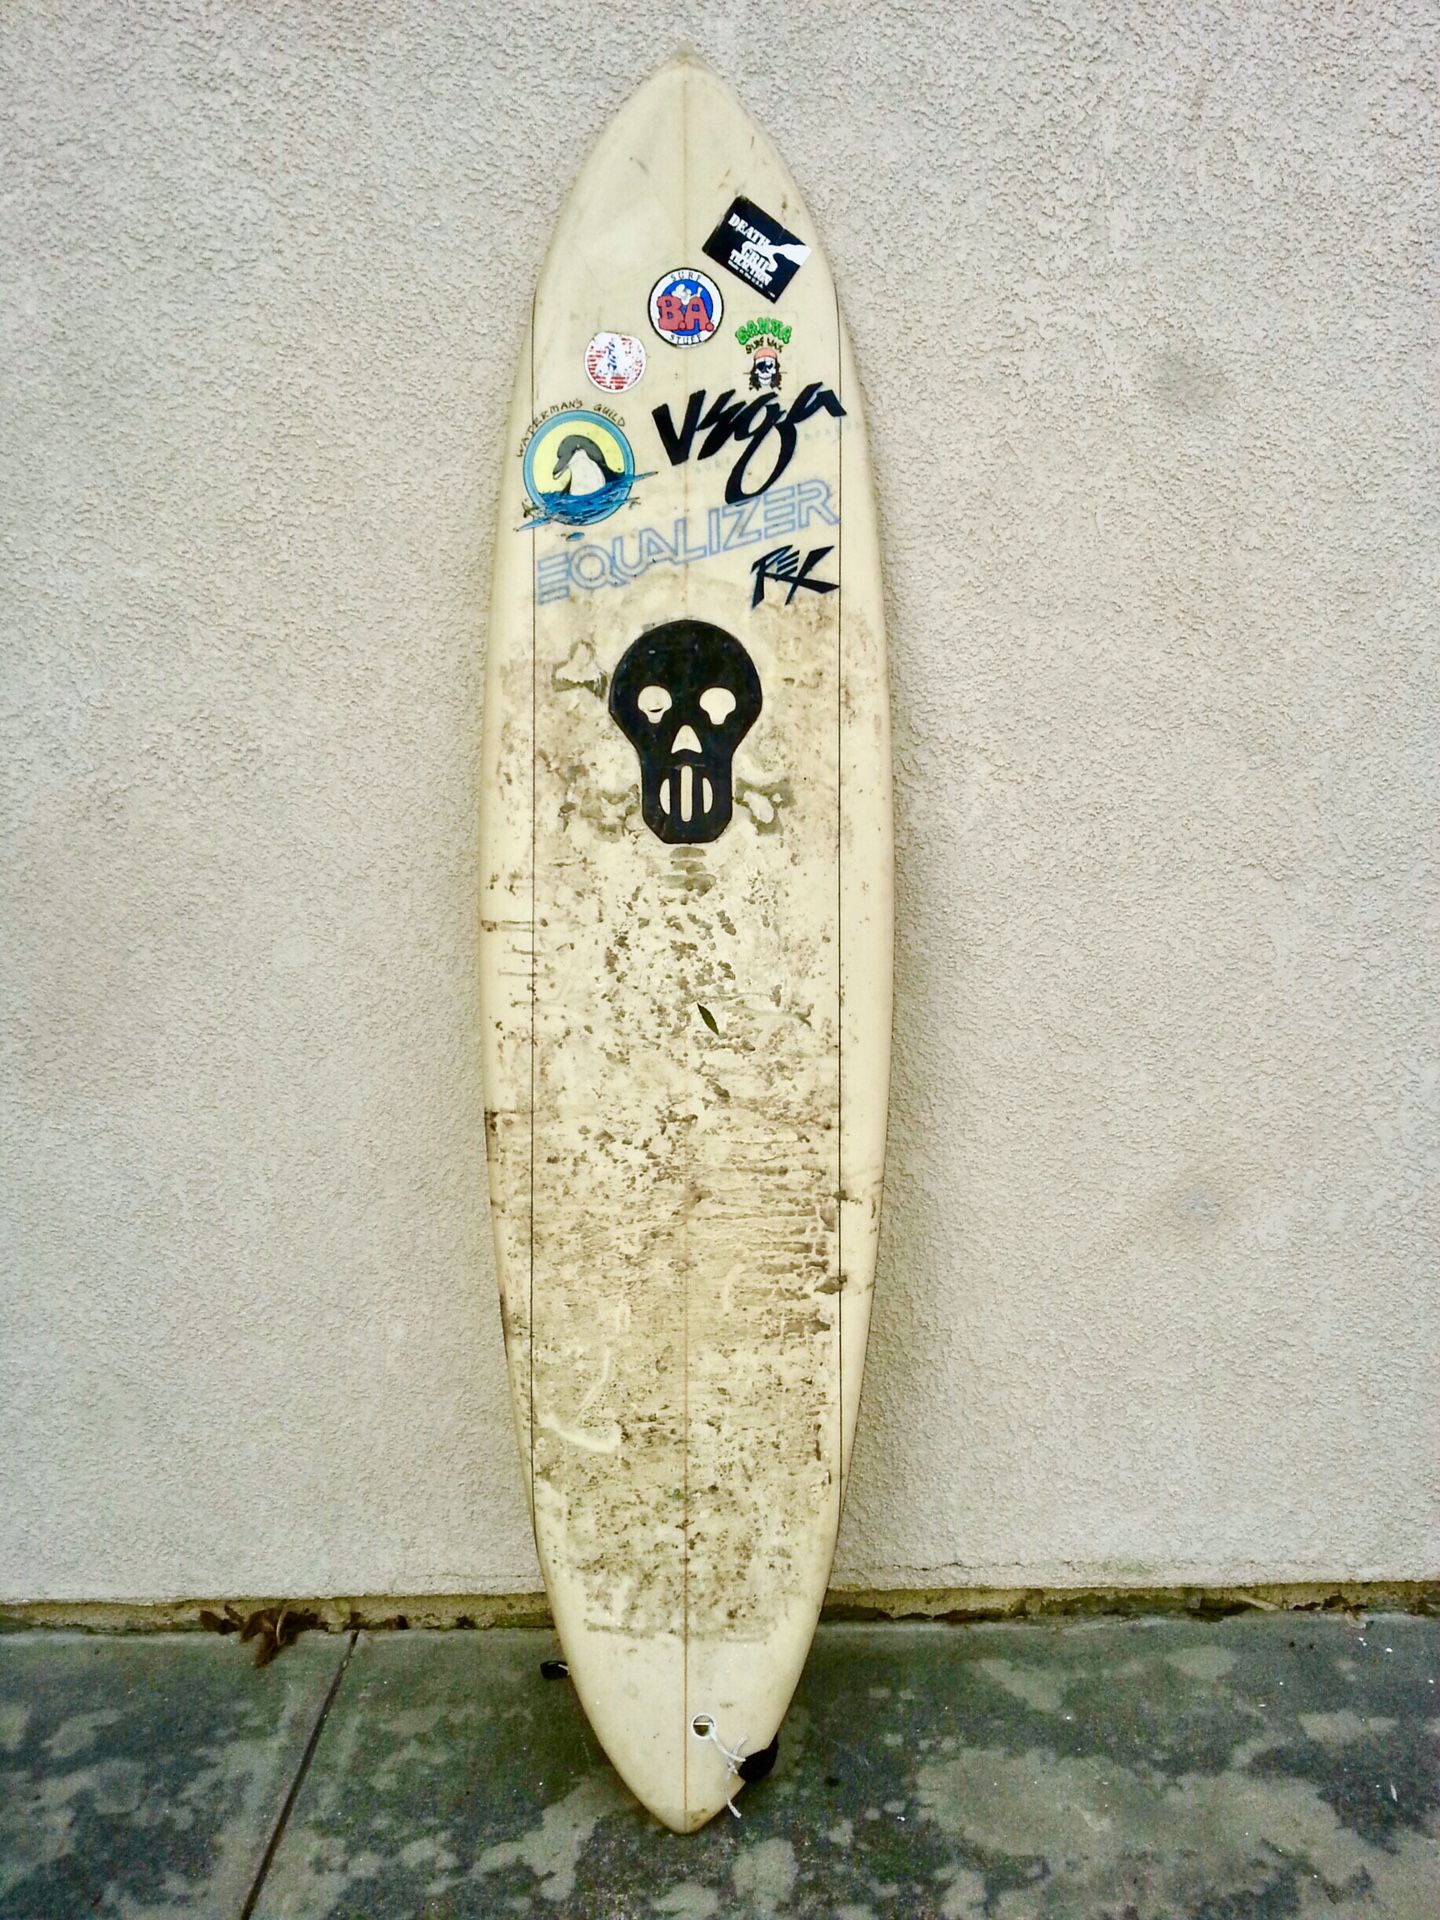 Vega Equalizer 7’ Hybrid Surfboard